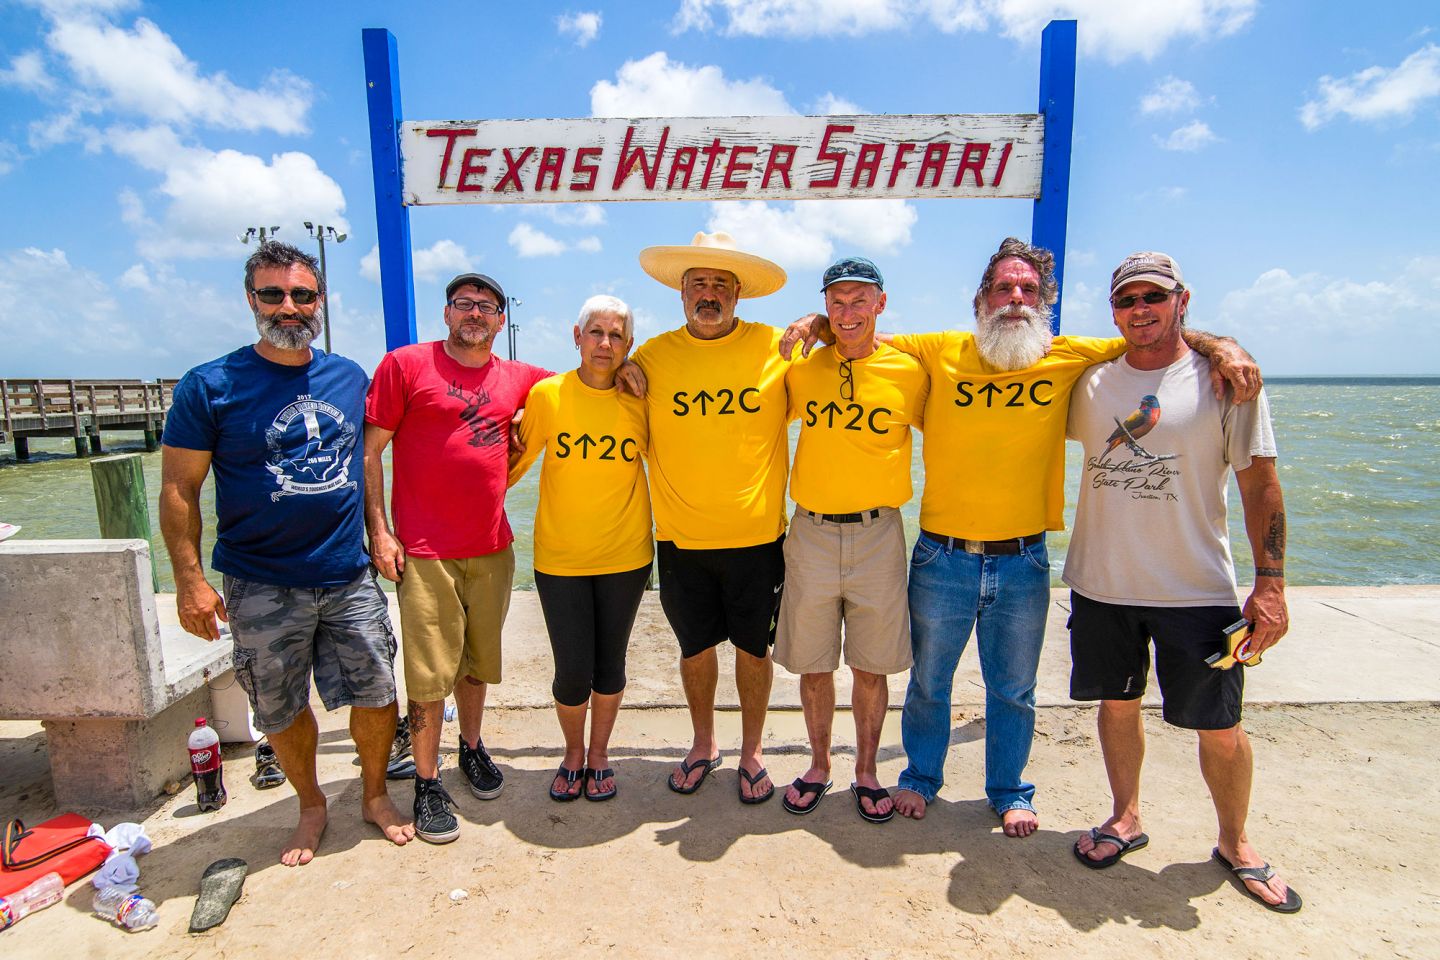 Group Photo at Texas Water Safari